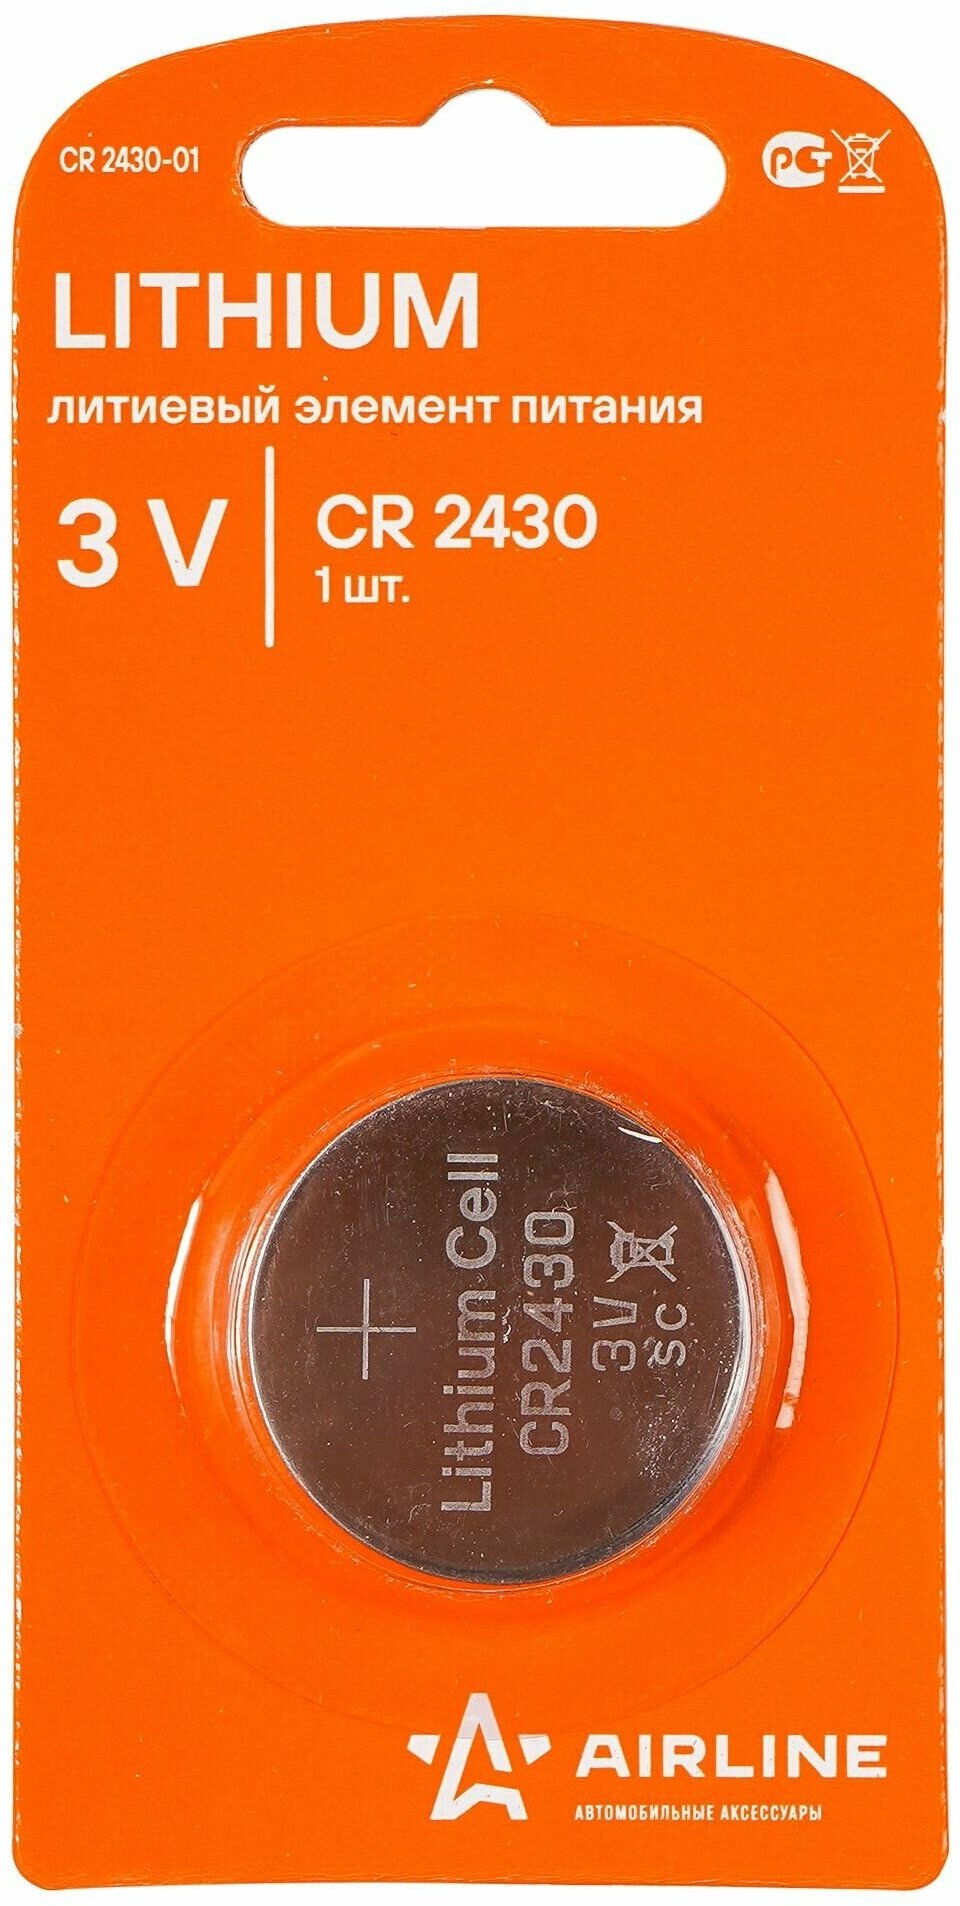 Батарейка CR2430 3V для брелоков сигнализаций литиевая 1 шт.